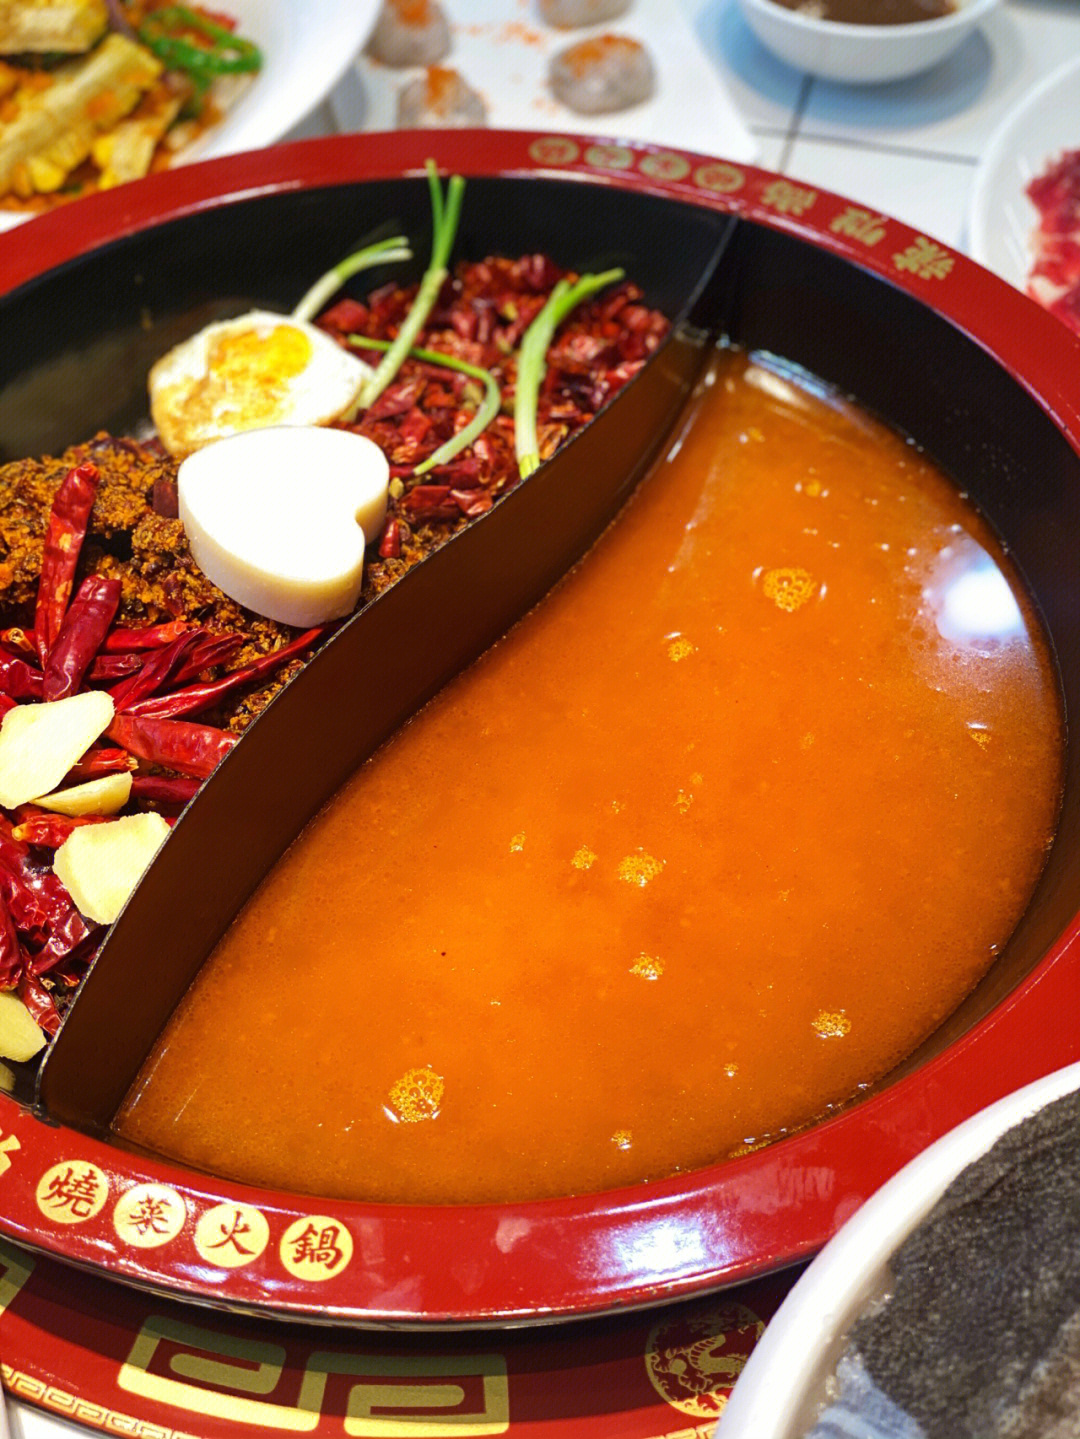 「辣胜尚烧菜火锅(合肥首店)」新出的黄柿子锅底很特别,是用内蒙古的